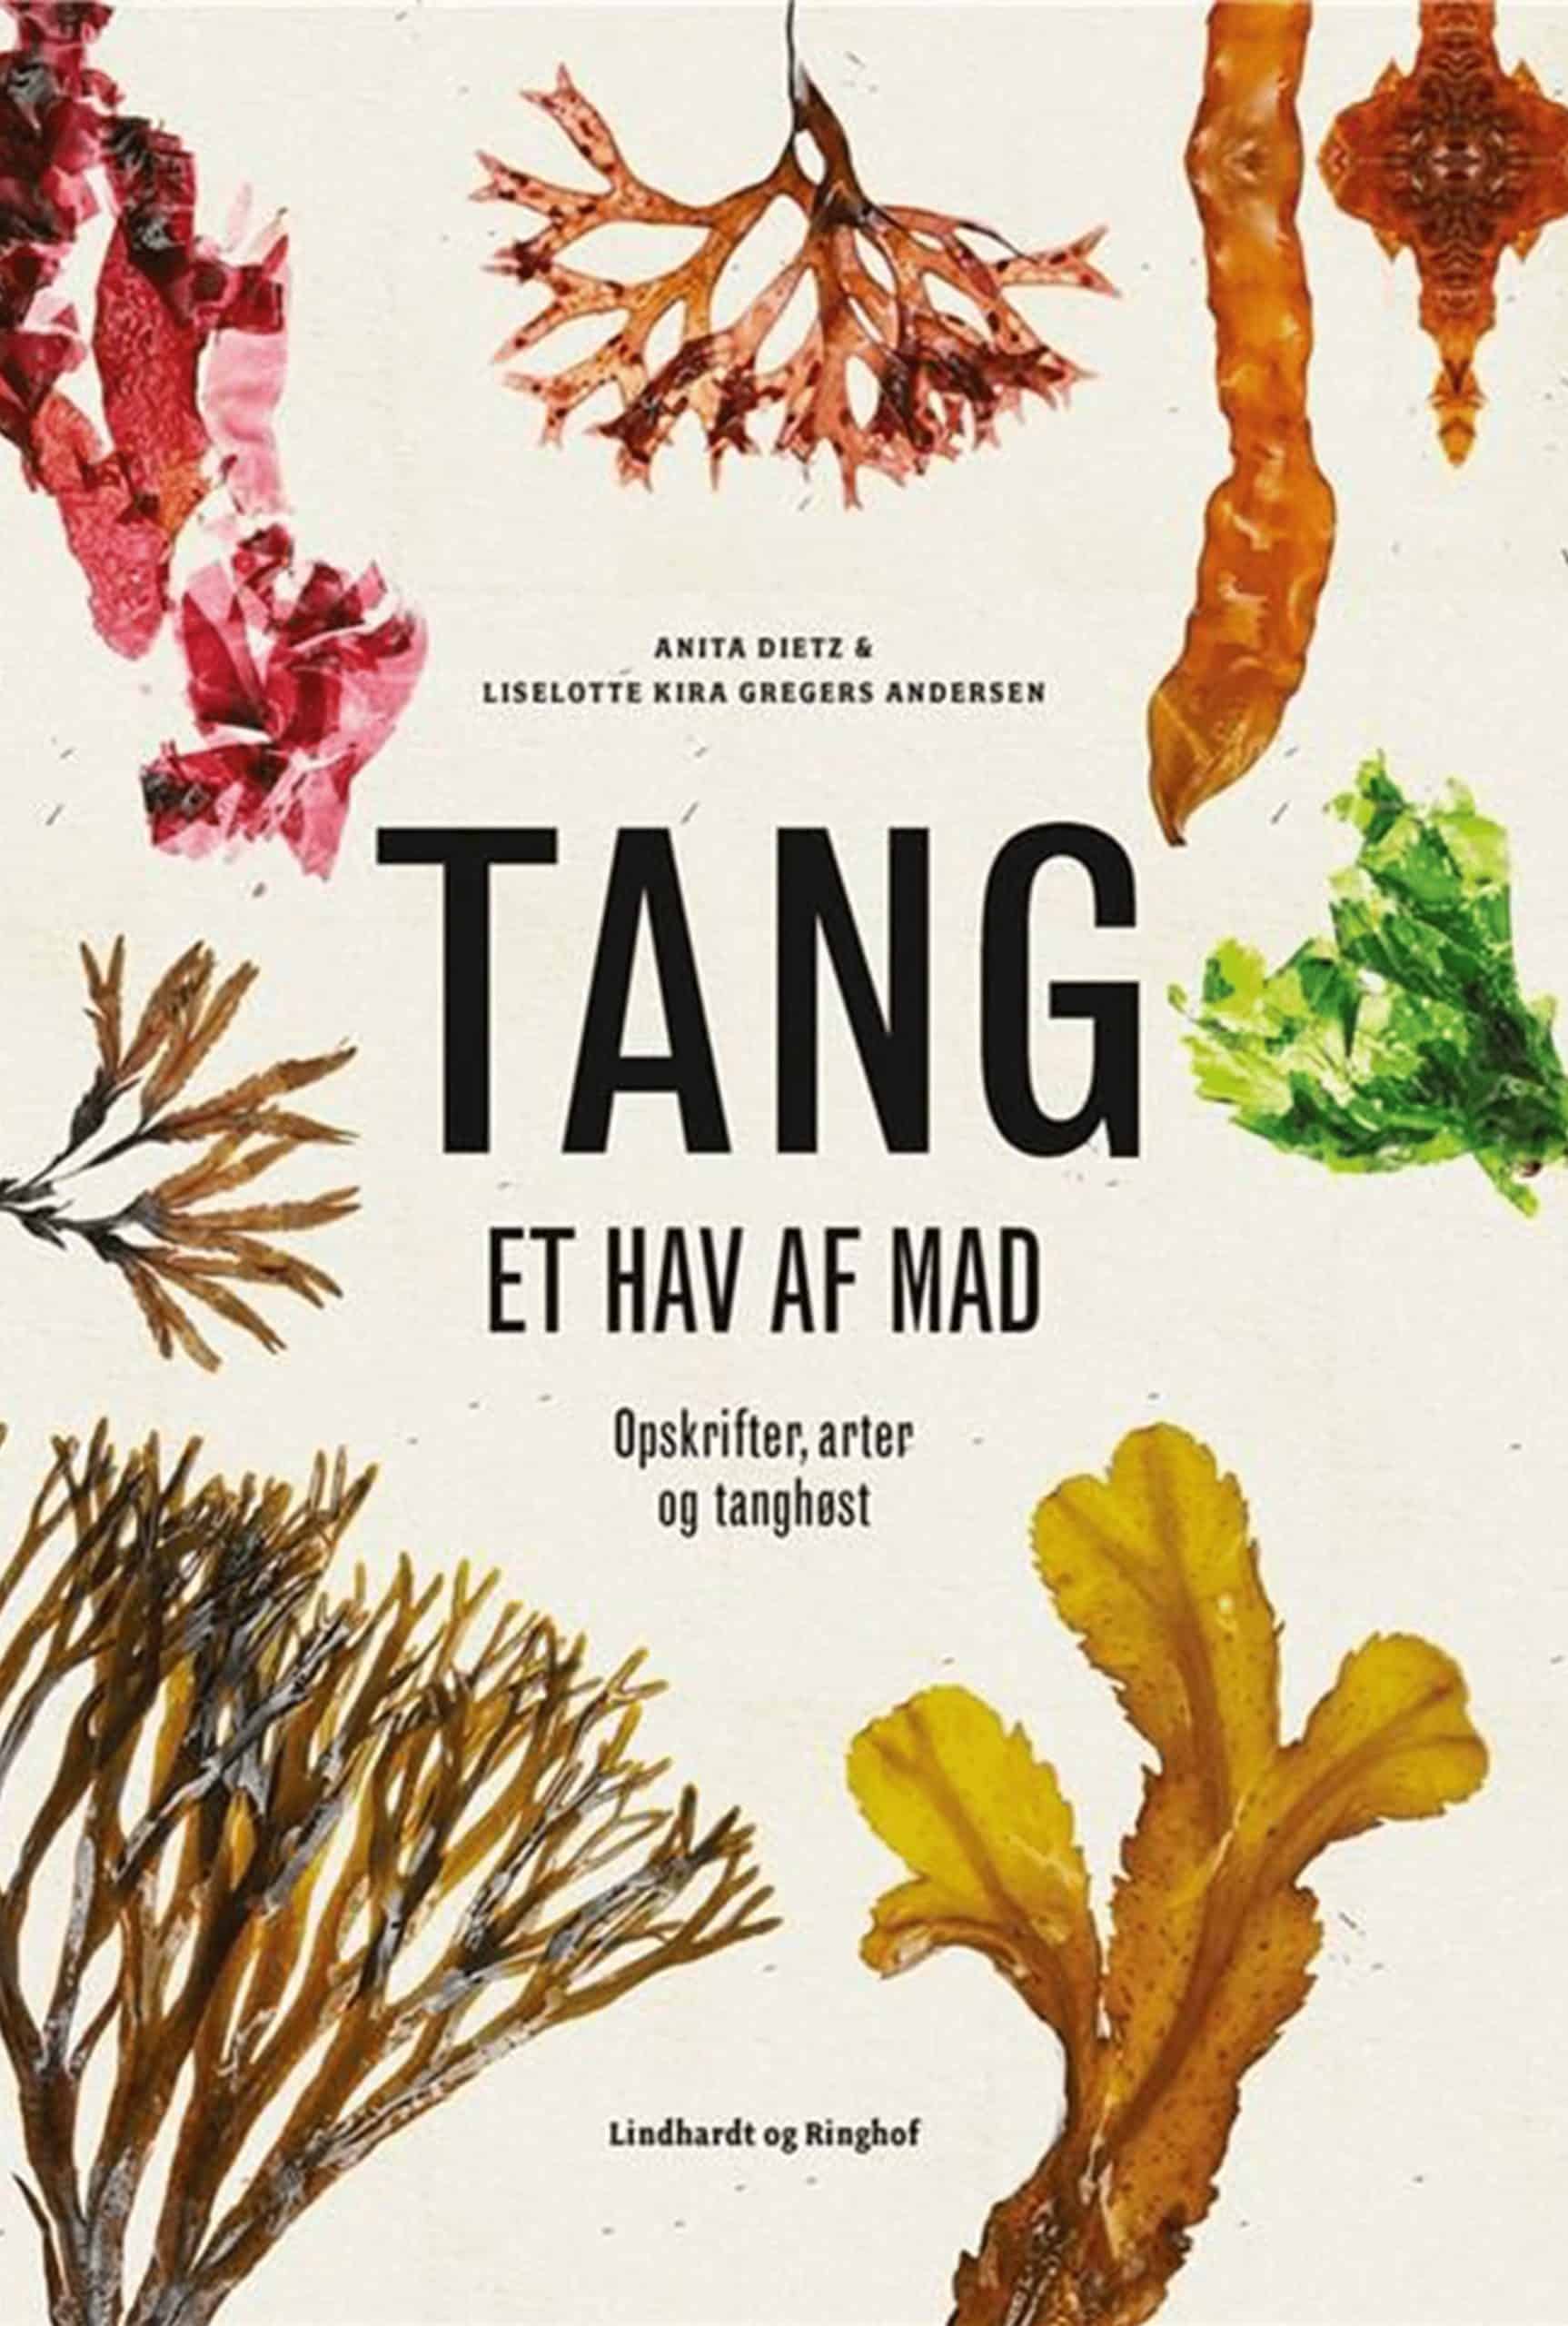 Tang - et hav af mad" på tilbud lige nu! Bogen alle naturfolk snakker om?